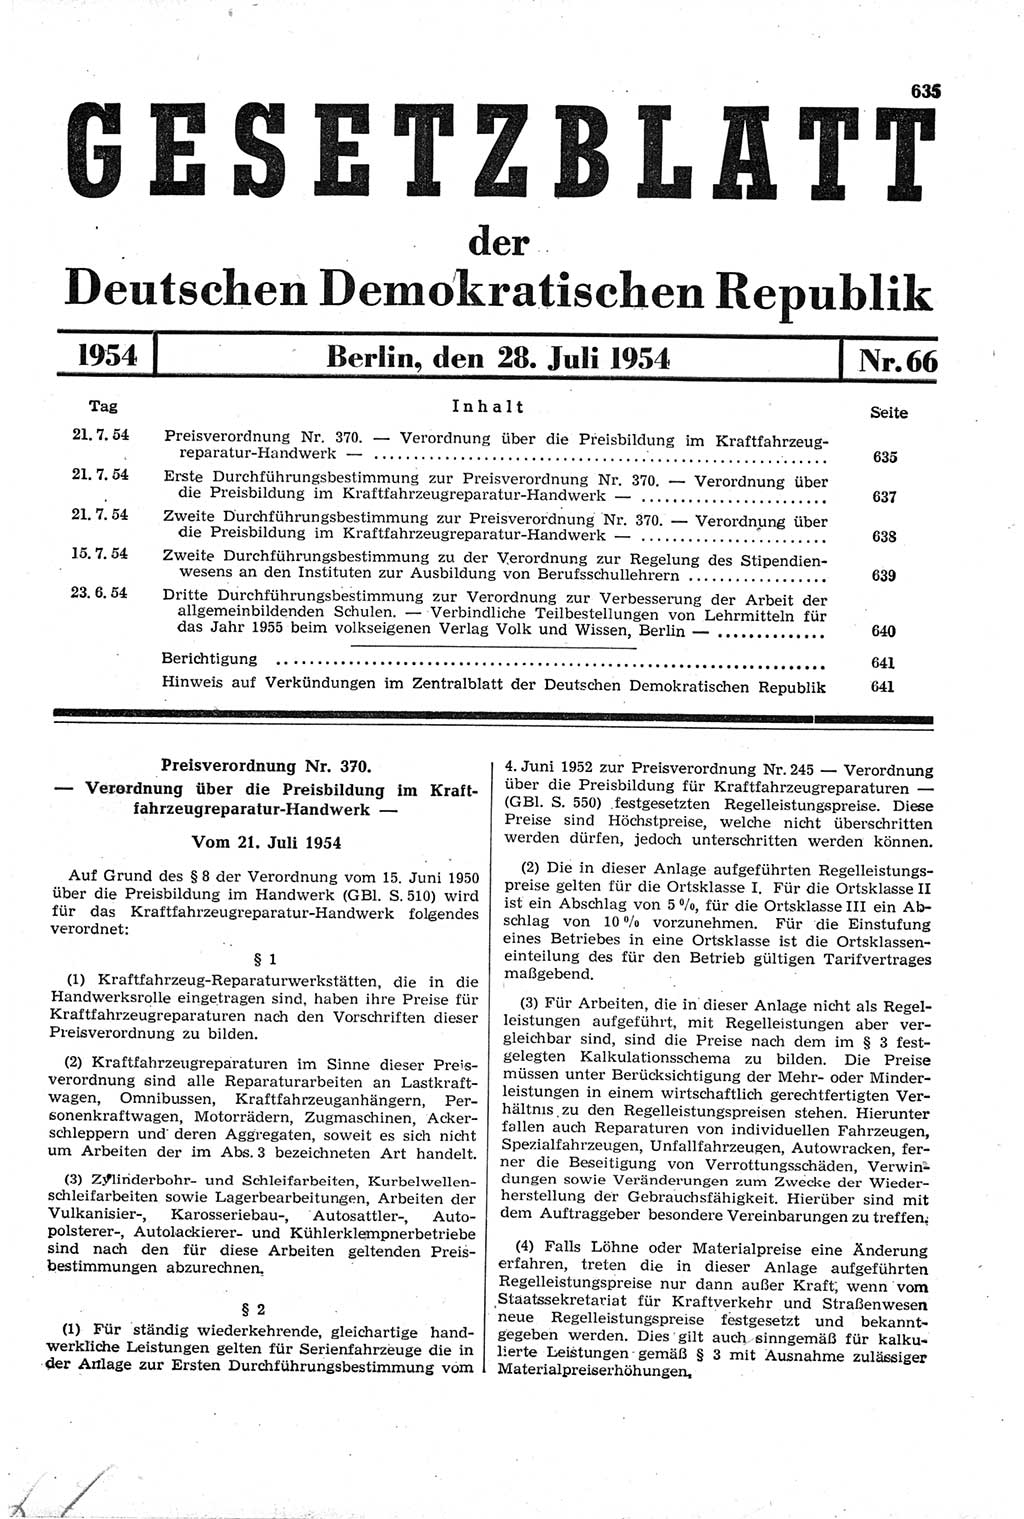 Gesetzblatt (GBl.) der Deutschen Demokratischen Republik (DDR) 1954, Seite 635 (GBl. DDR 1954, S. 635)